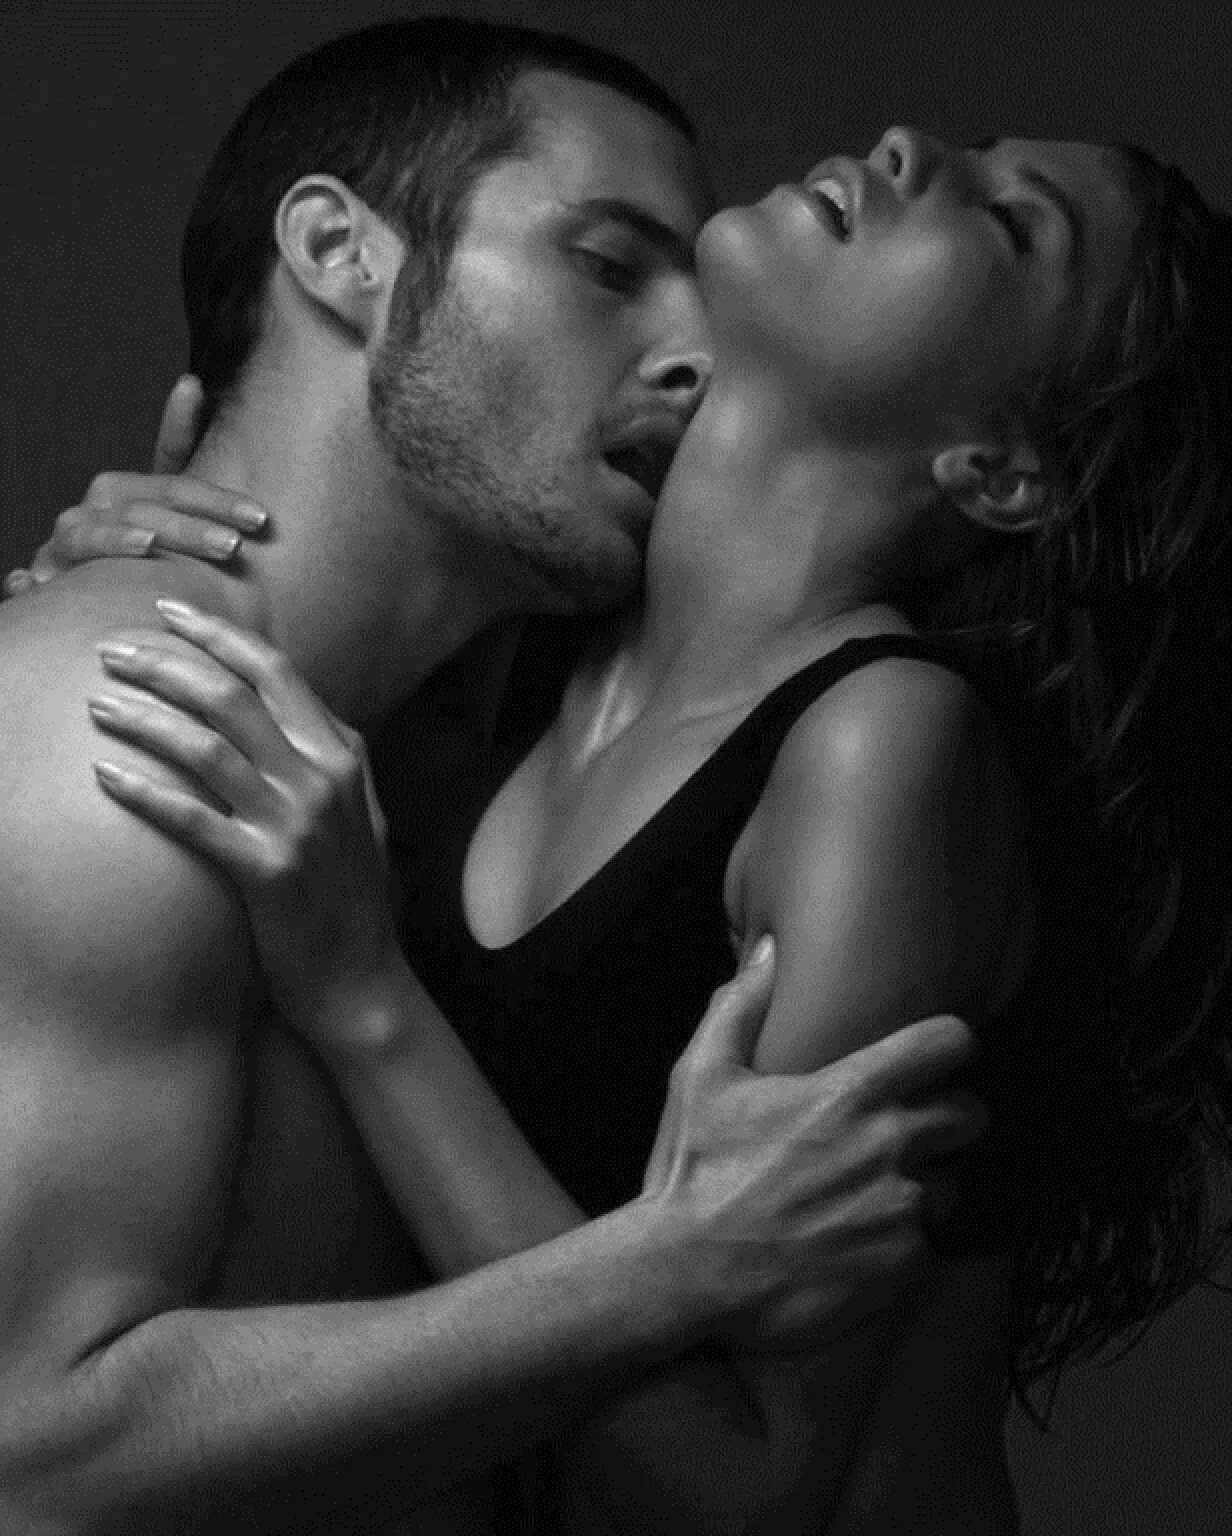 Sensual 18. Страстные поцелуи. Красивый поцелуй. Мужчина и женщина страсть. Чувственный поцелуй.